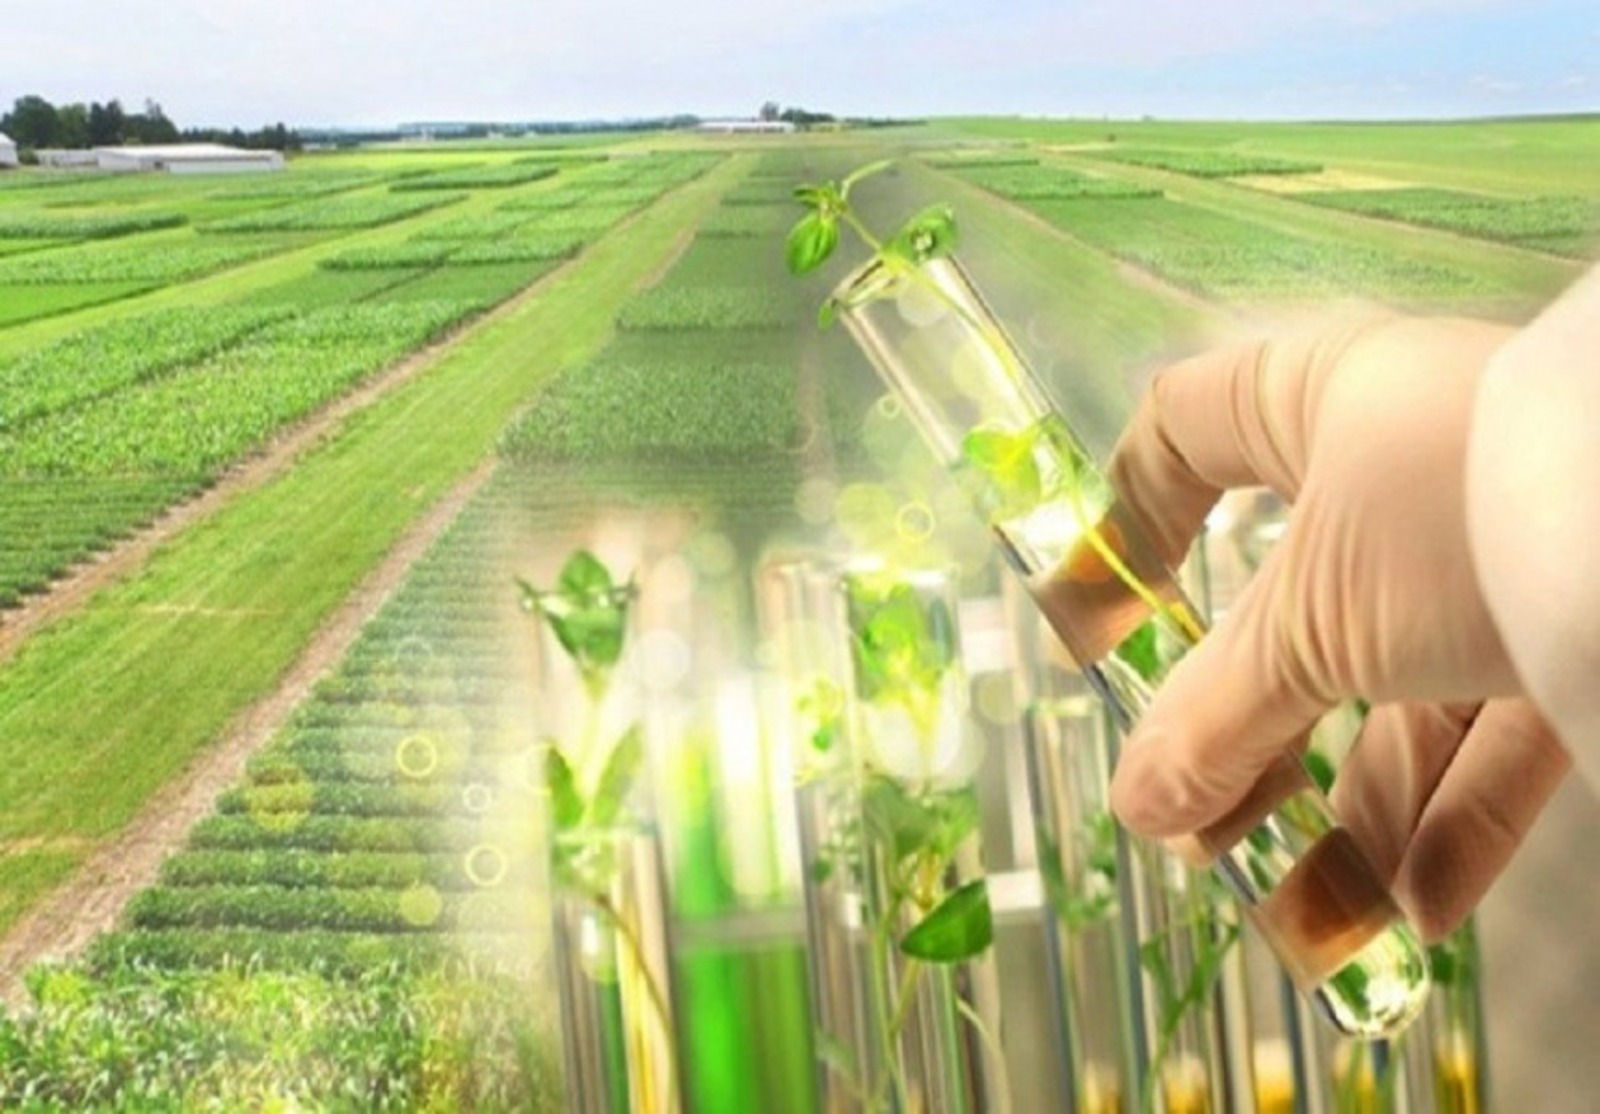 Повышение урожайности растений. Биотехнологии в сельском хозяйстве. Селекция в сельском хозяйстве. Инновации в растениеводстве. Инновации в сельском хозяйстве.